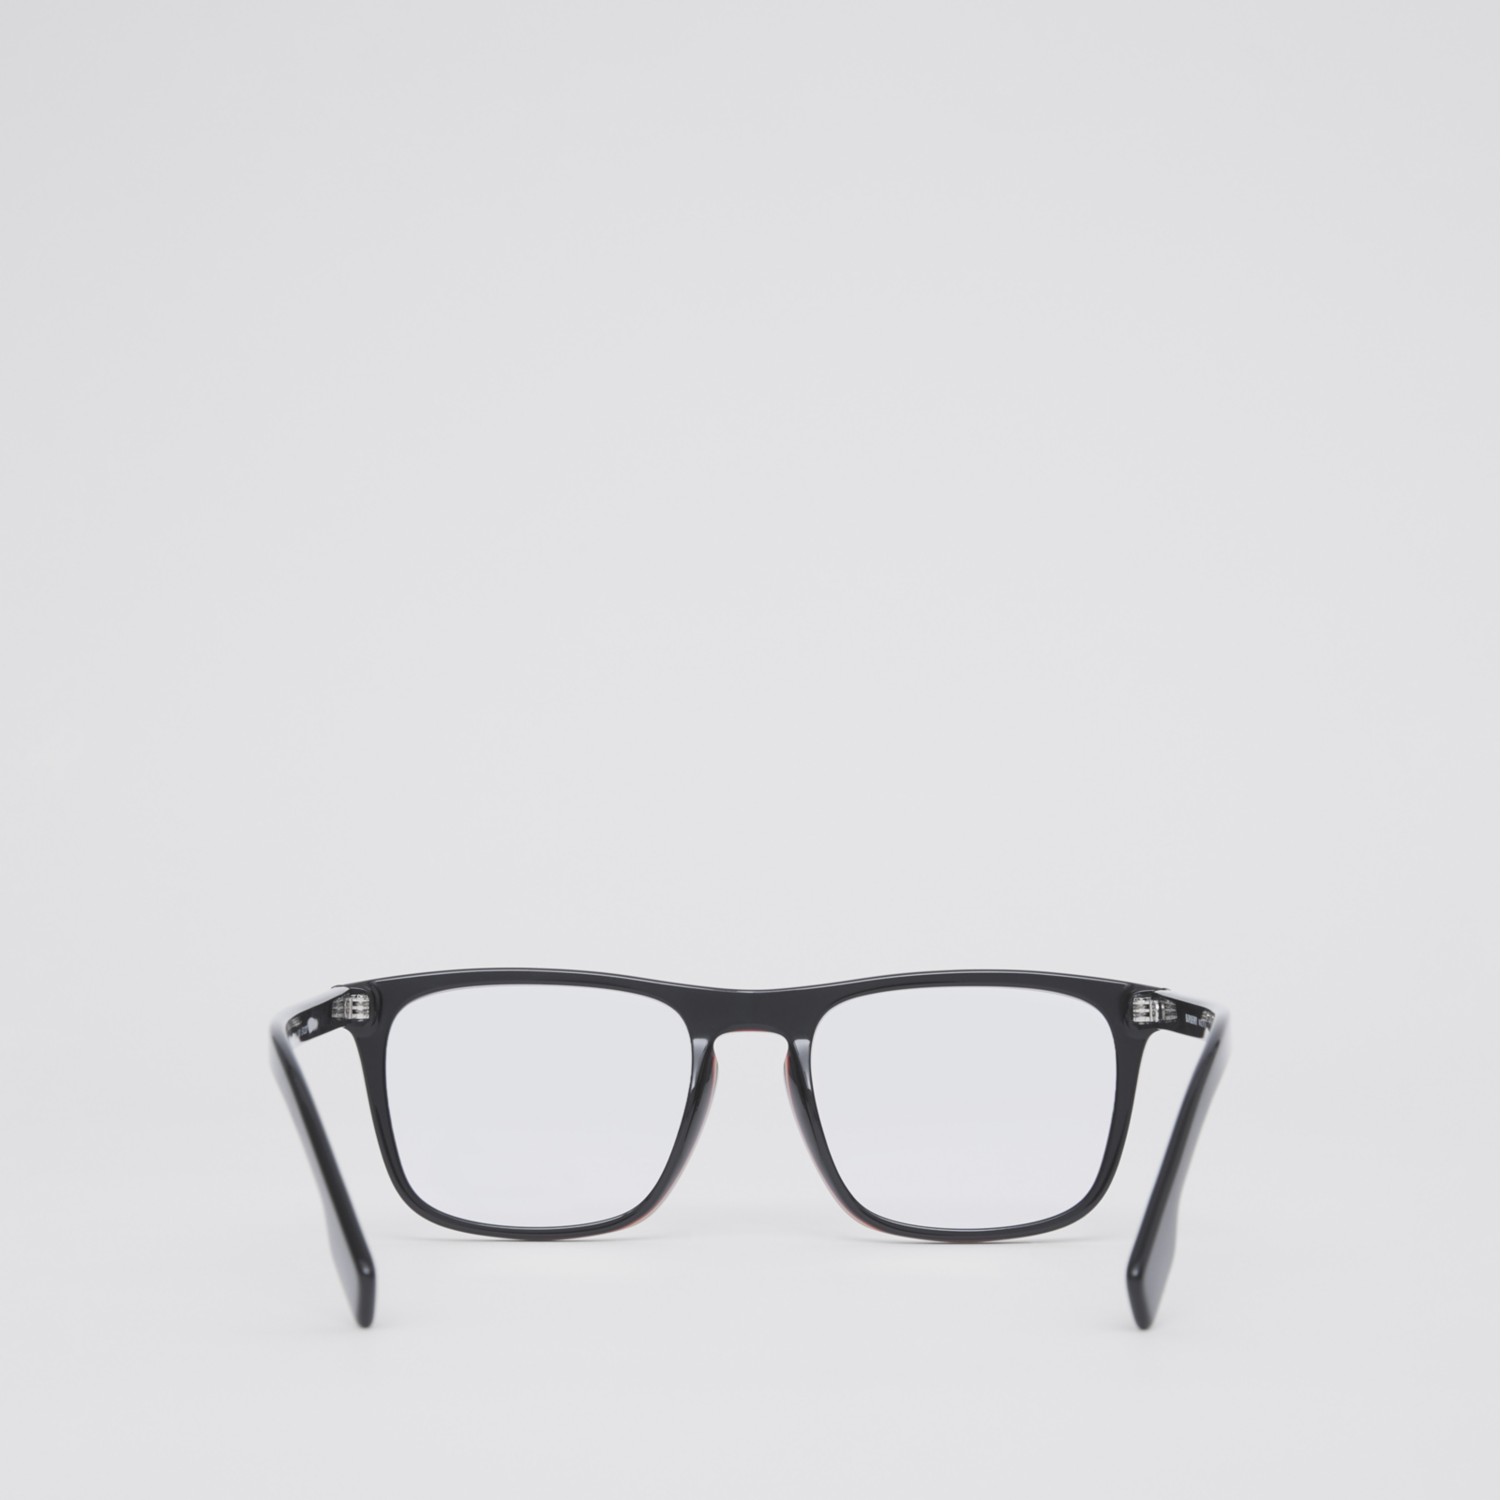 Korrekturbrille mit eckigem Gestell und Streifendetail